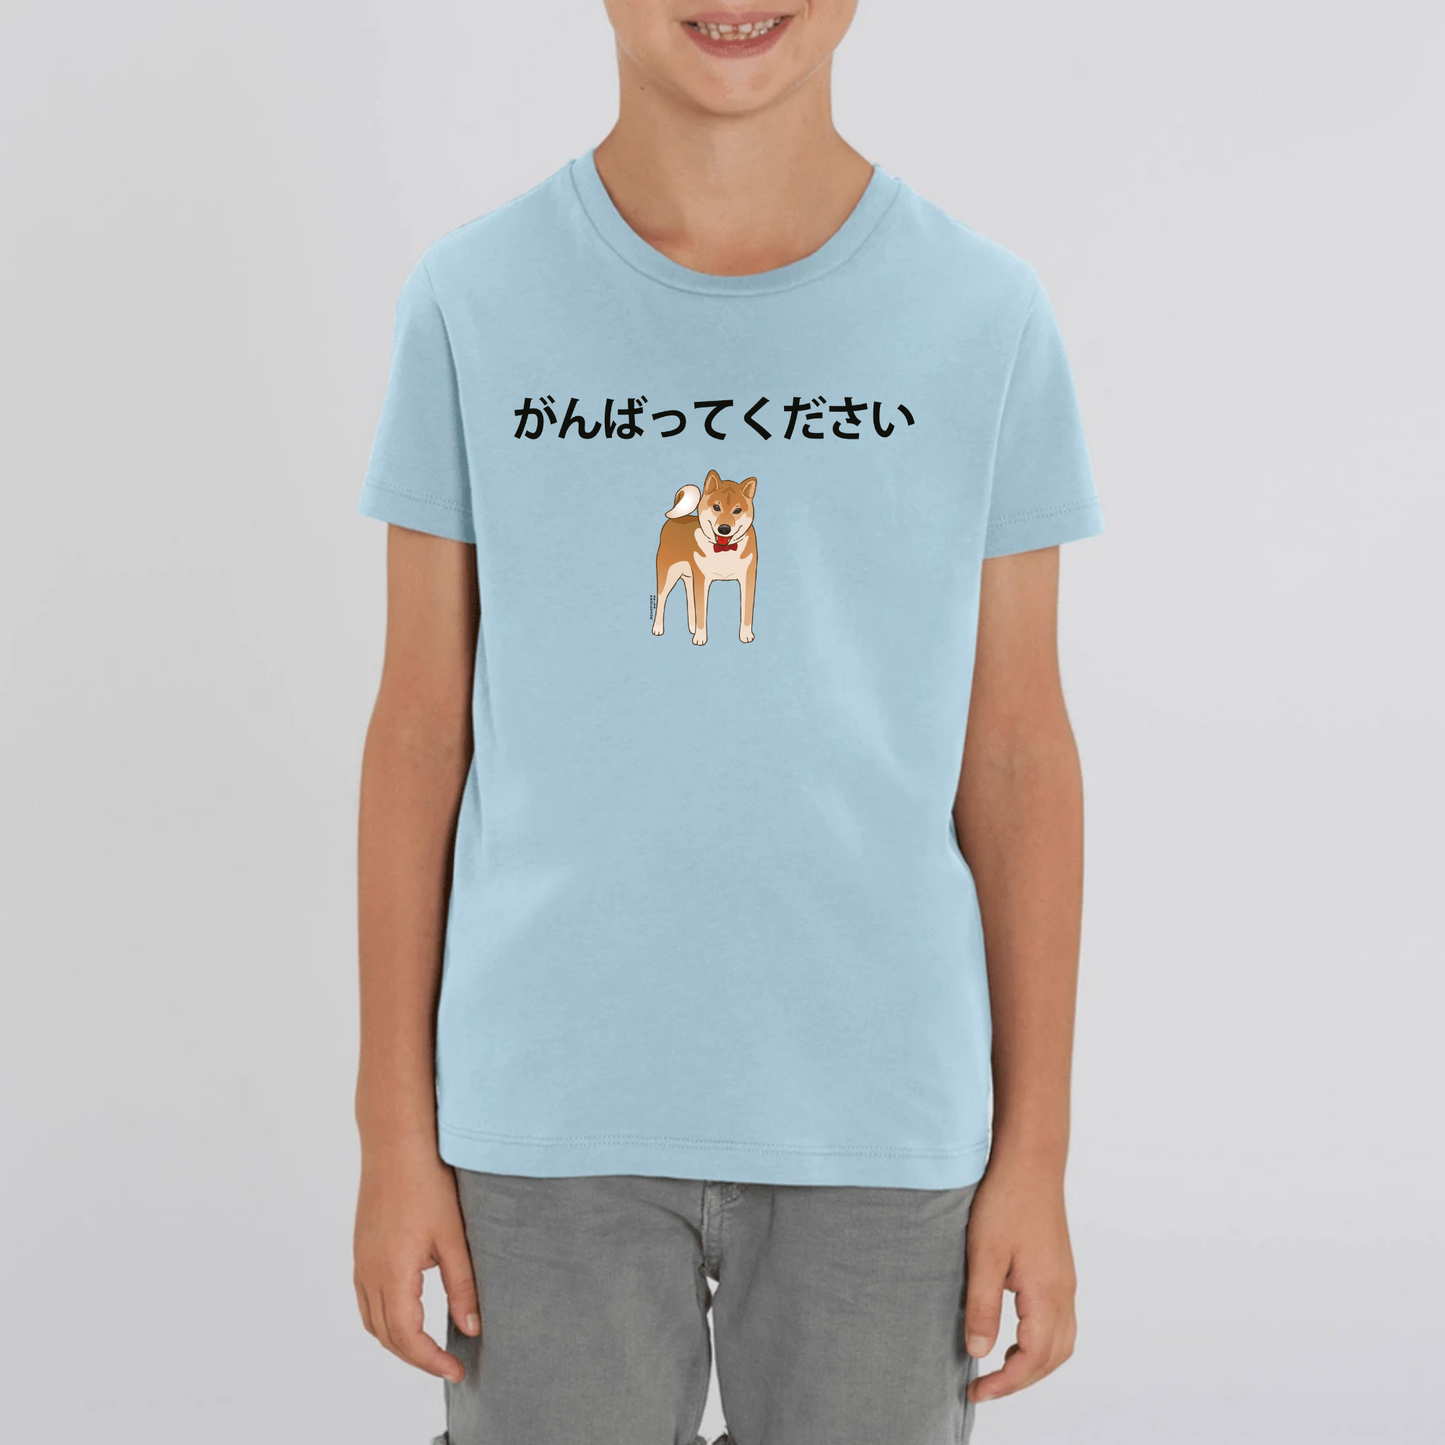 Kids 'Please do your best' T-shirt (4 colours)